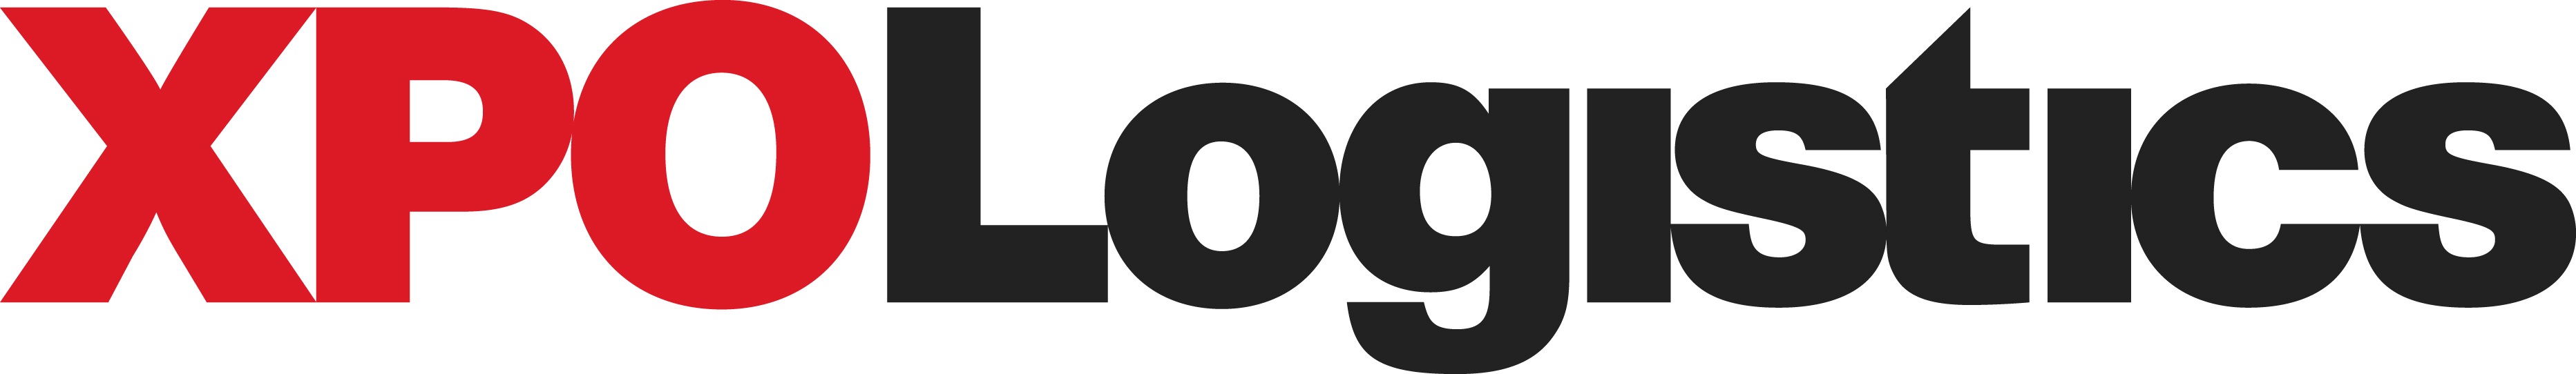 xpo_logo2019.jpg
